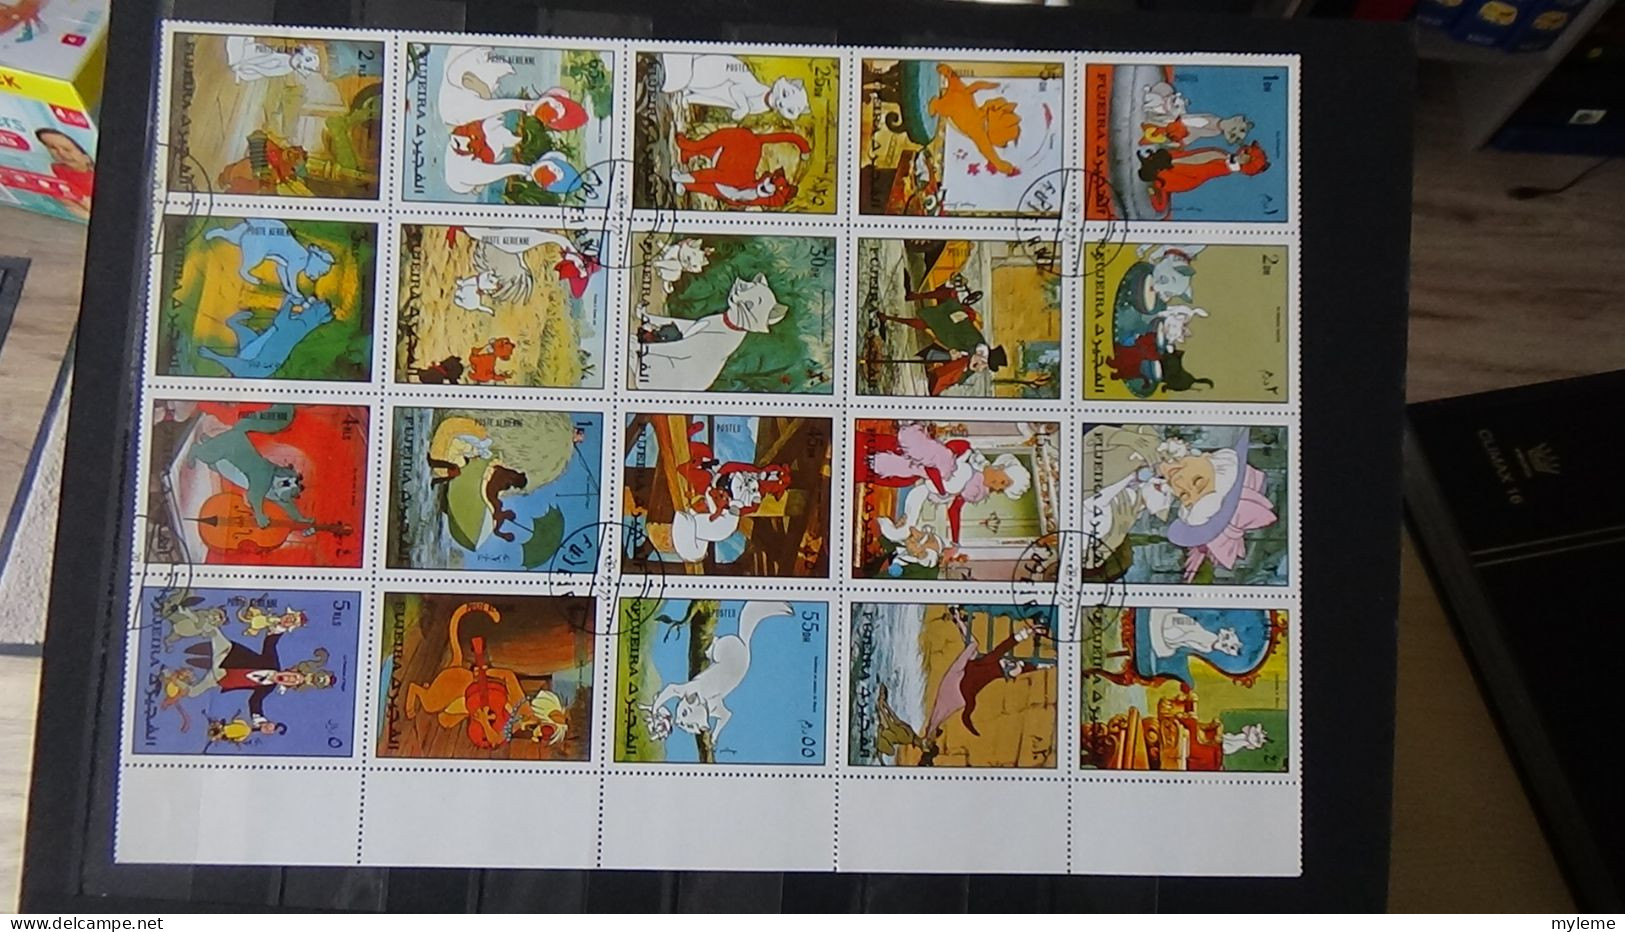 BF54 Bel ensemble de timbres de divers pays + plaquette de timbres **. A saisir !!!